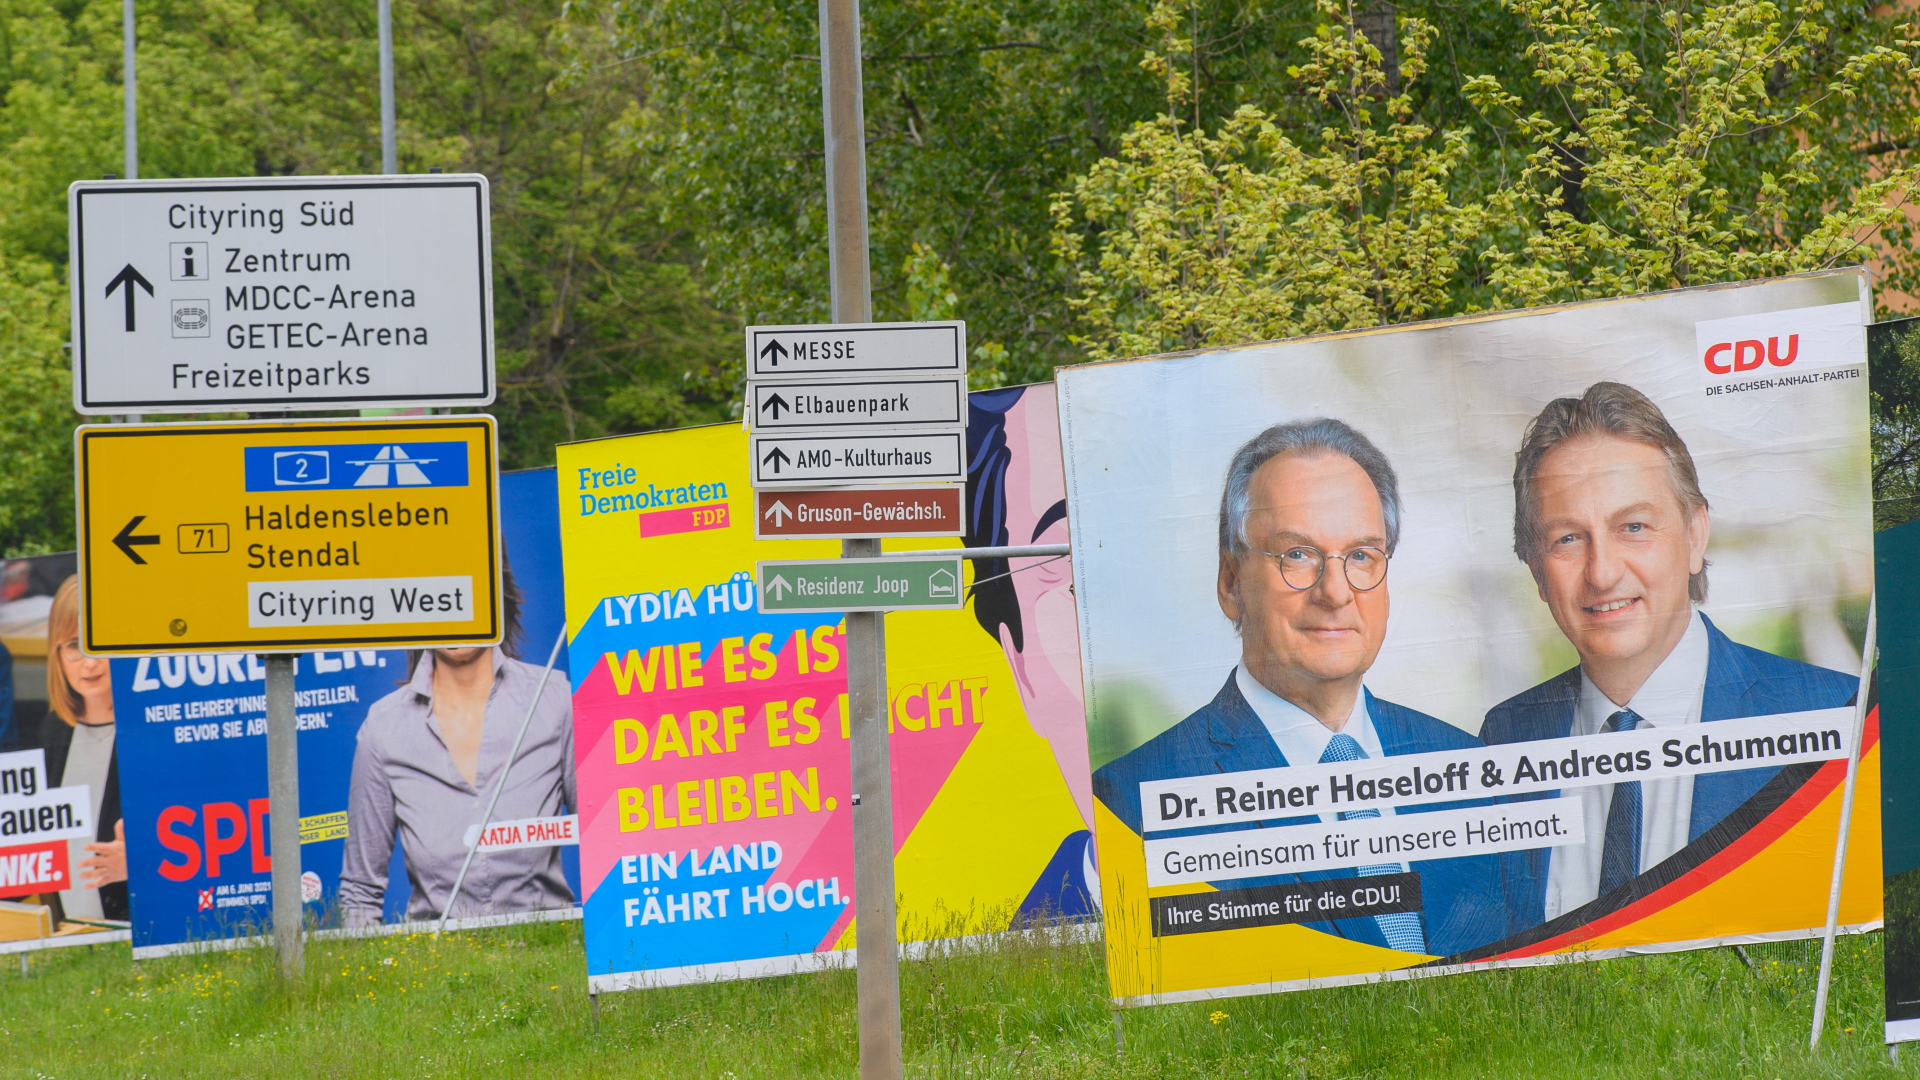 CDU-Wahlplakat in Sachsen-Anhalt | dpa